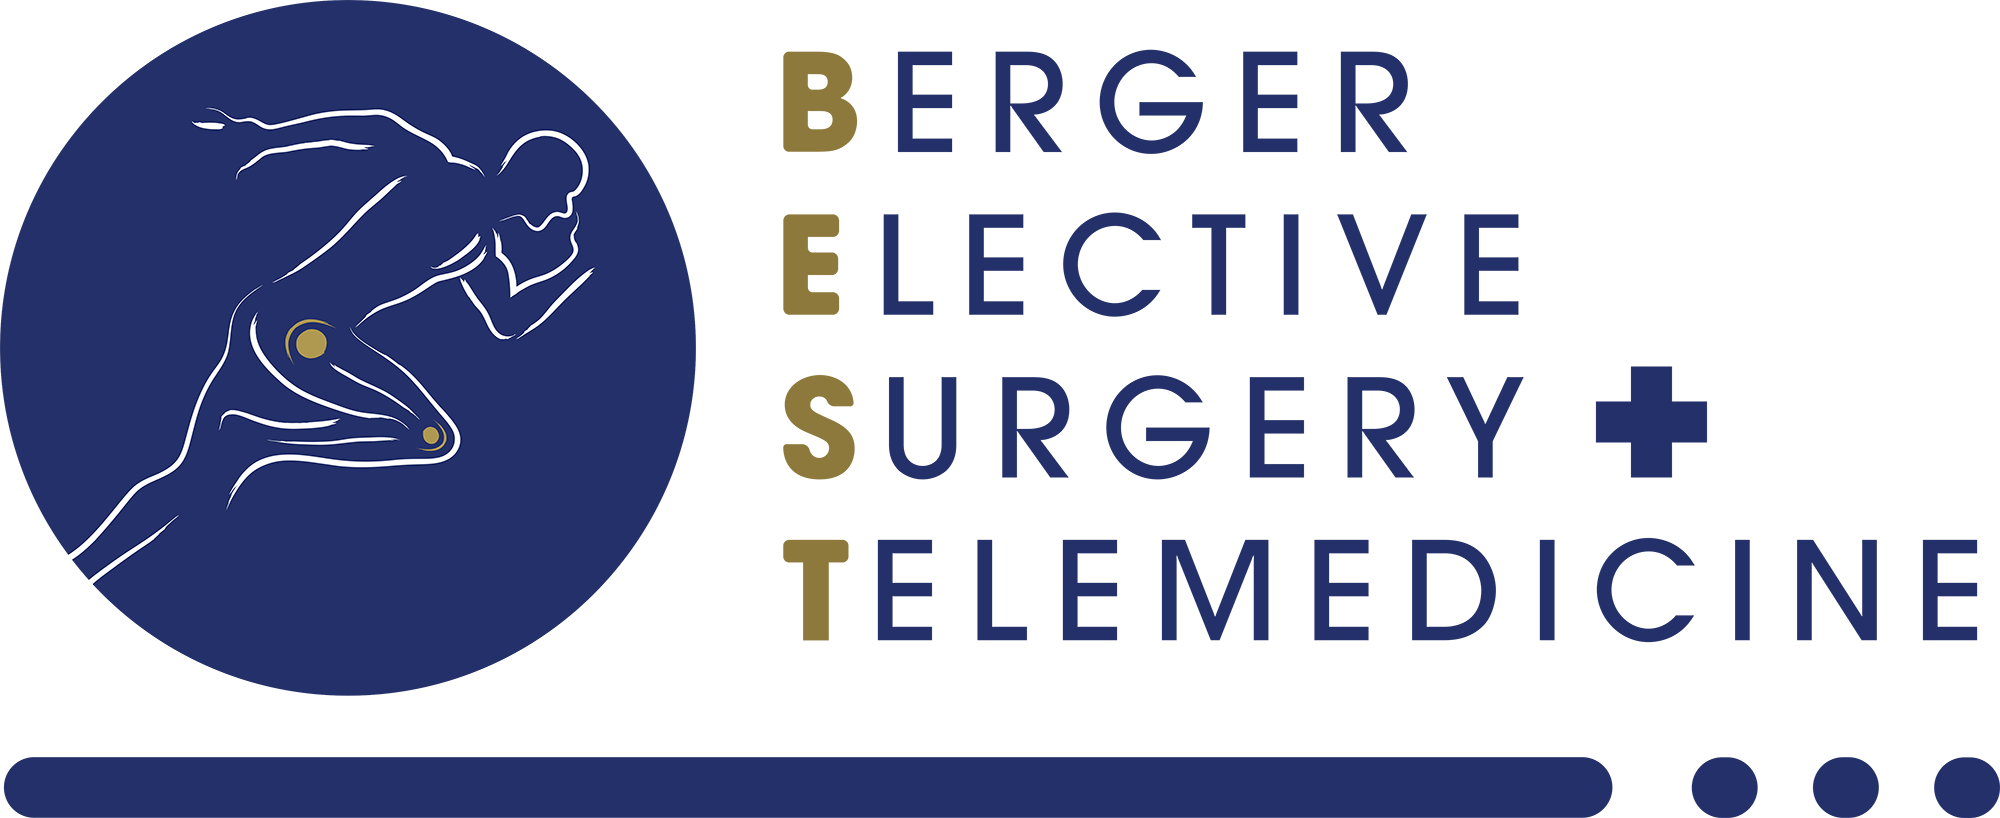 Berger Elective Surgery + Telemedicine Logo